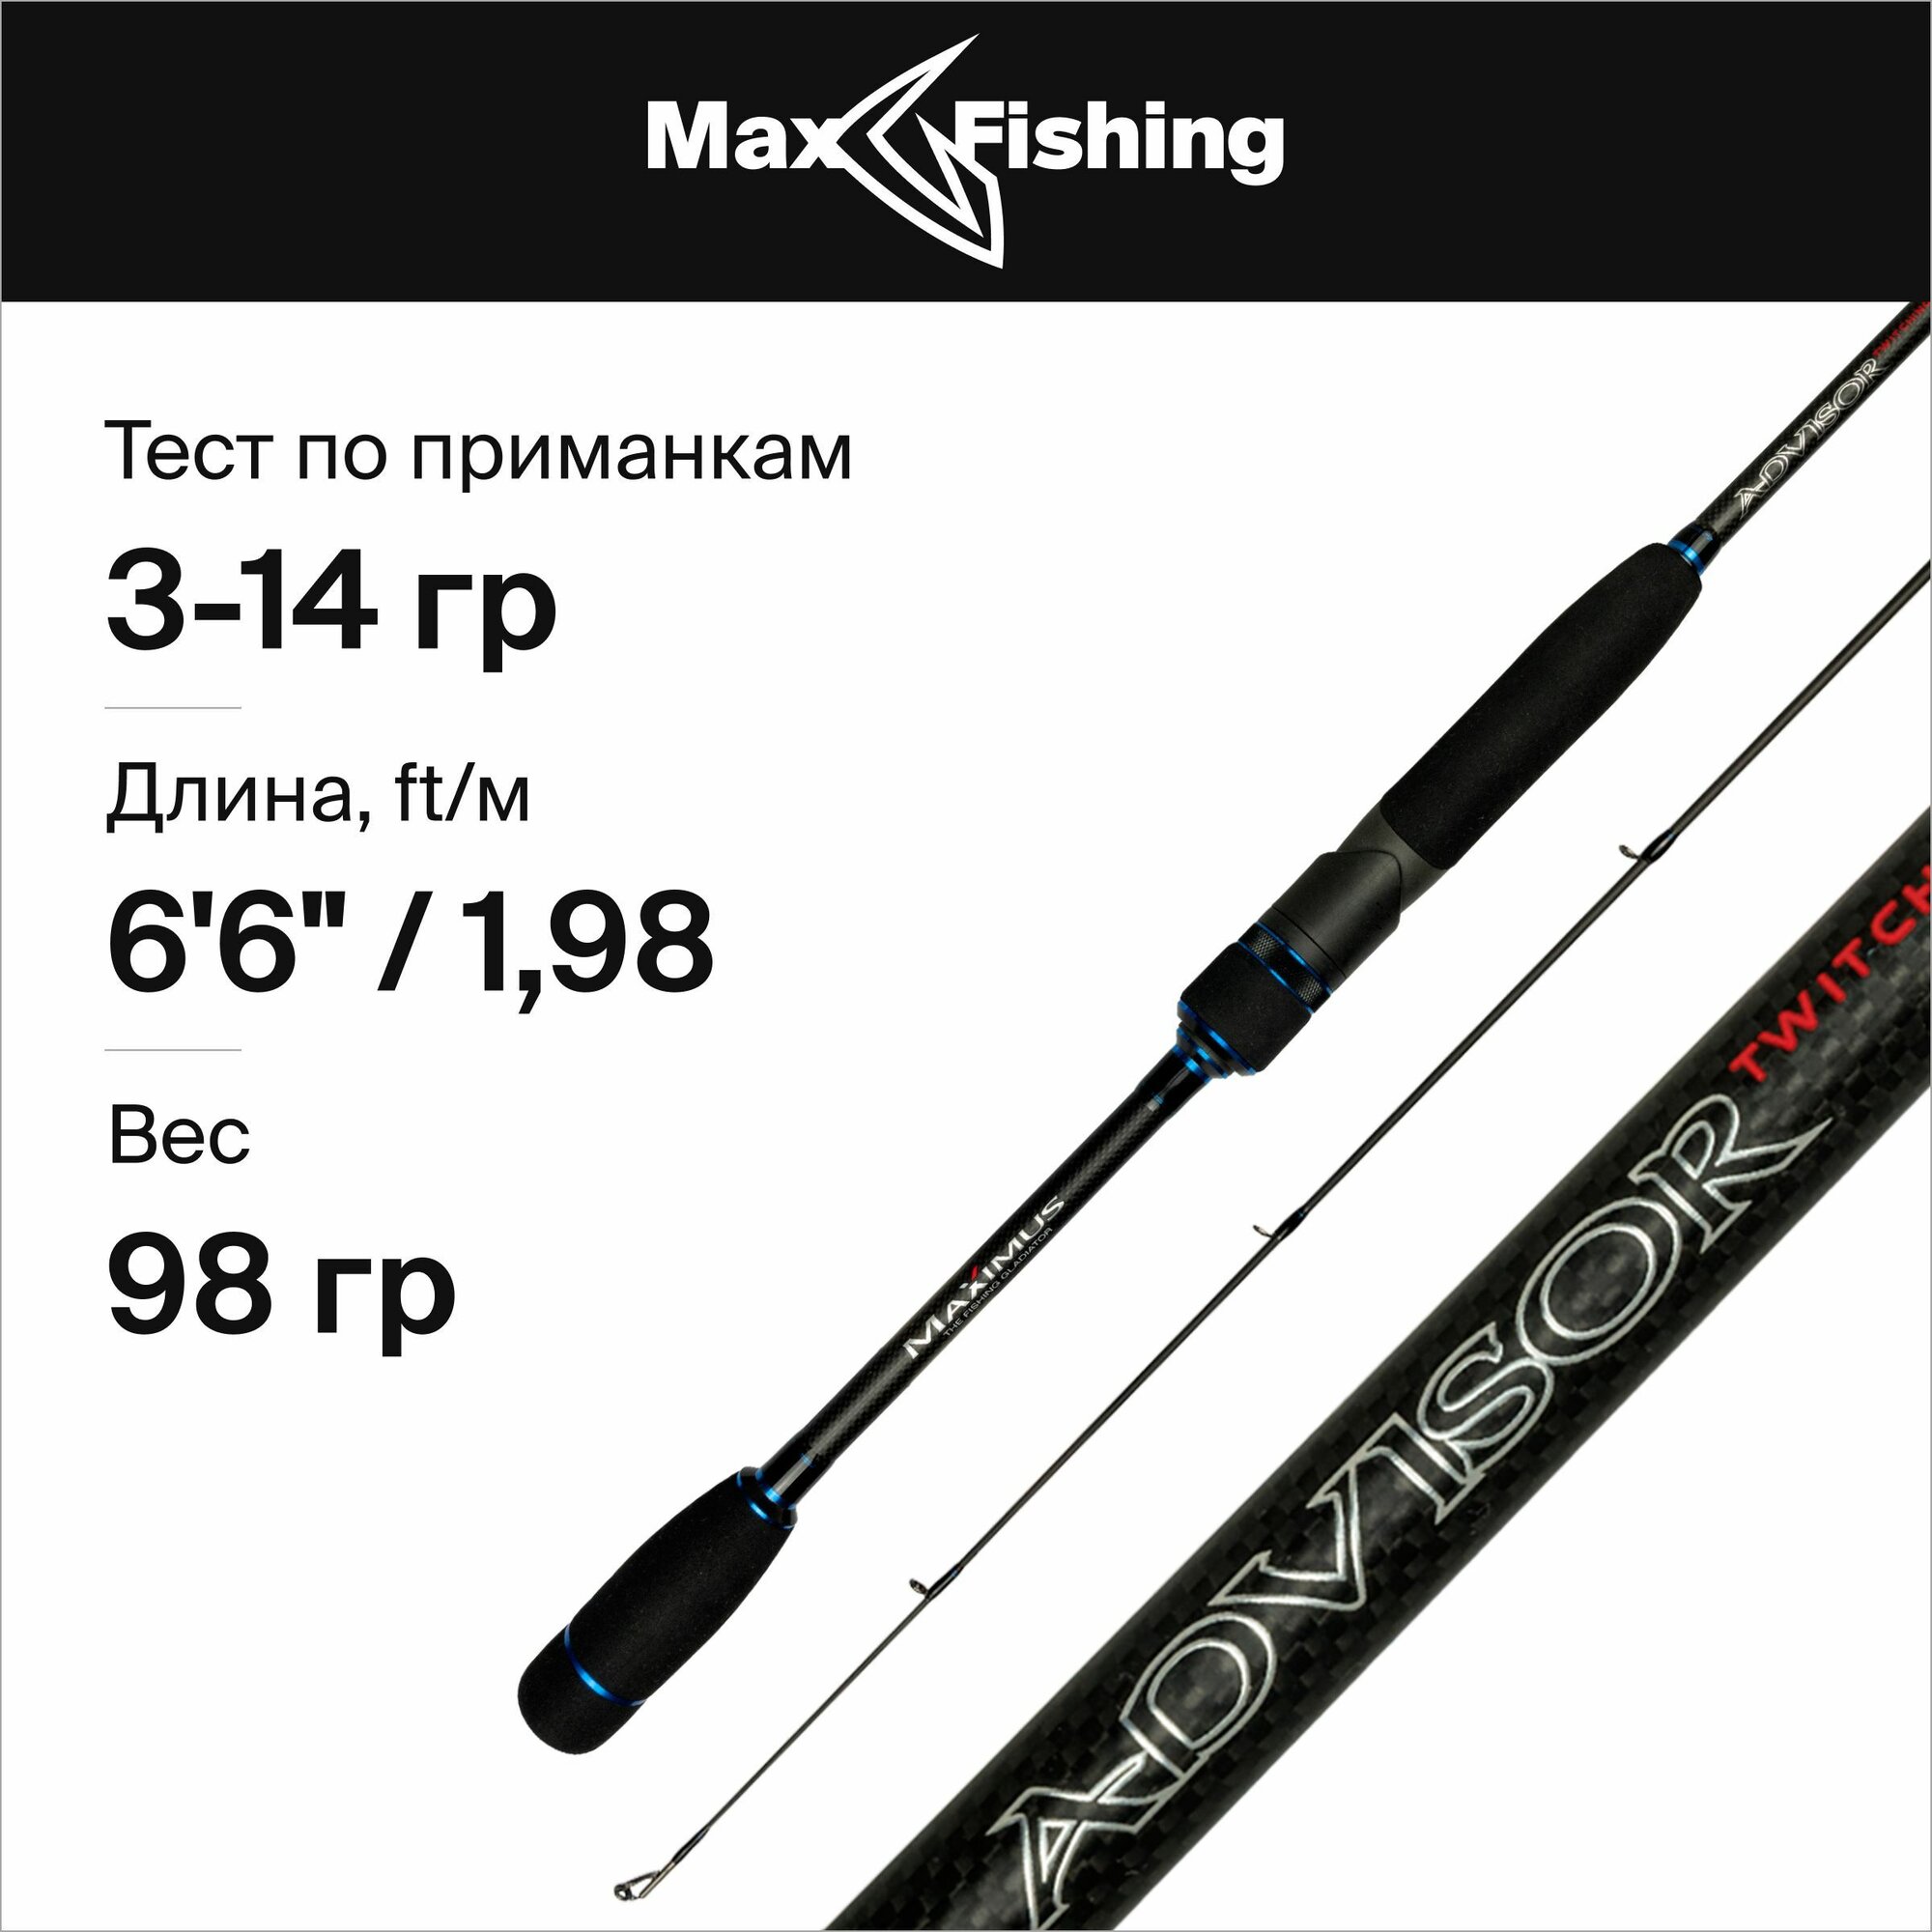 Спиннинг для рыбалки Maximus Advisor Twitching 198L 3-14гр, 198 см, для твичинга, блесны, джига, на окуня, шуку, судака, жереха / удилище спиннинговое